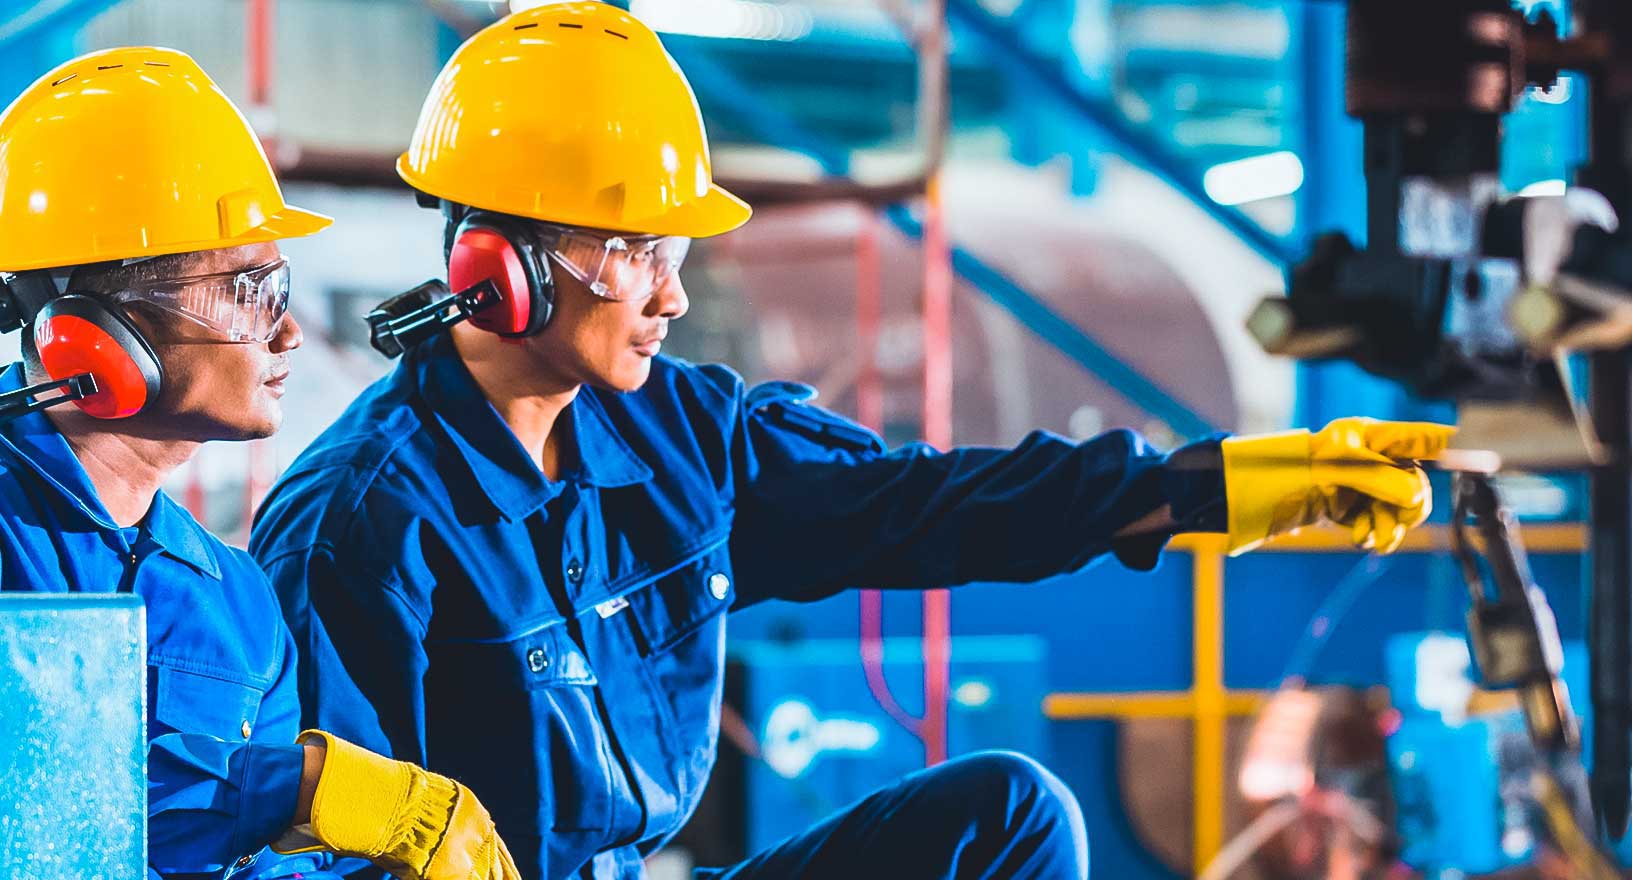 Travailleurs de l’environnement de fabrication inspectant le chantier avec des casques, des protections auditives et des gants